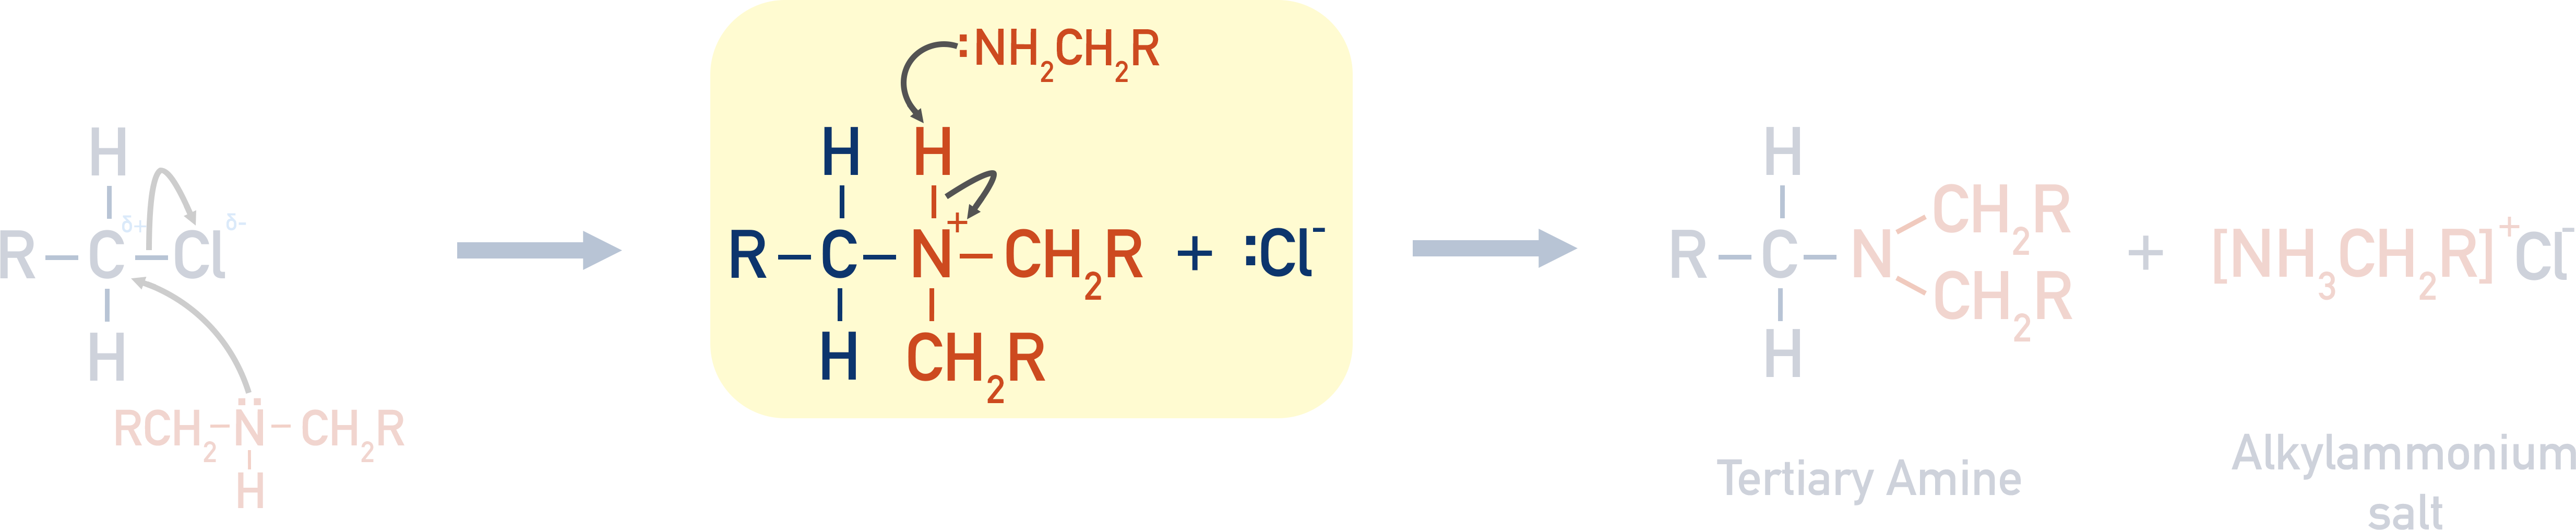 tertiary amine mechanism from halogenoalkane and secondary amine step 2